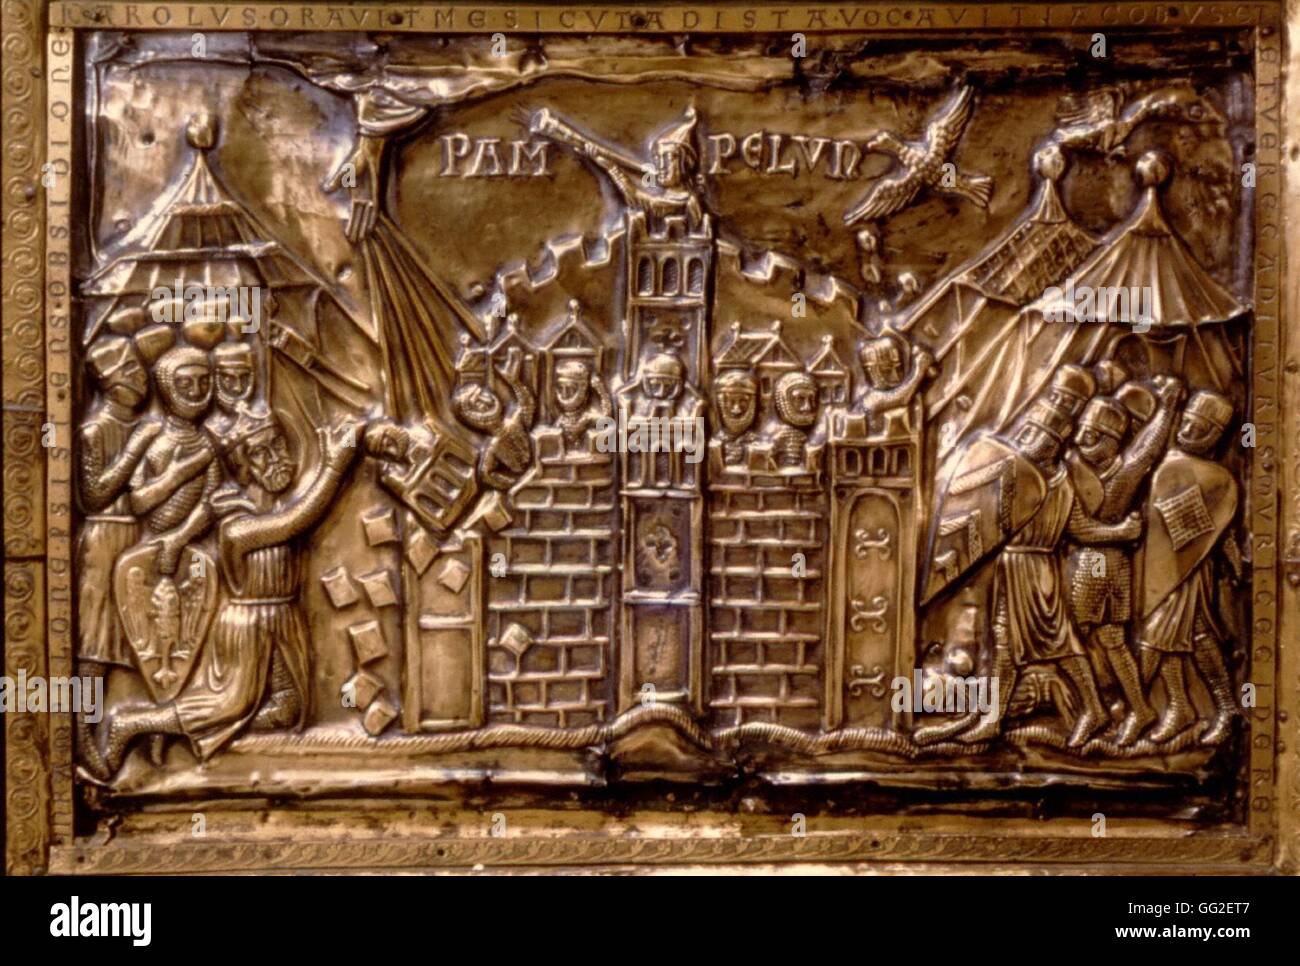 Aachen tesoro il reliquiario di Carlo Magno, ca. 1215. Dettaglio: l assedio di Pamplona. Medioevo Francia Germania / Cattedrale di Aachen Foto Stock